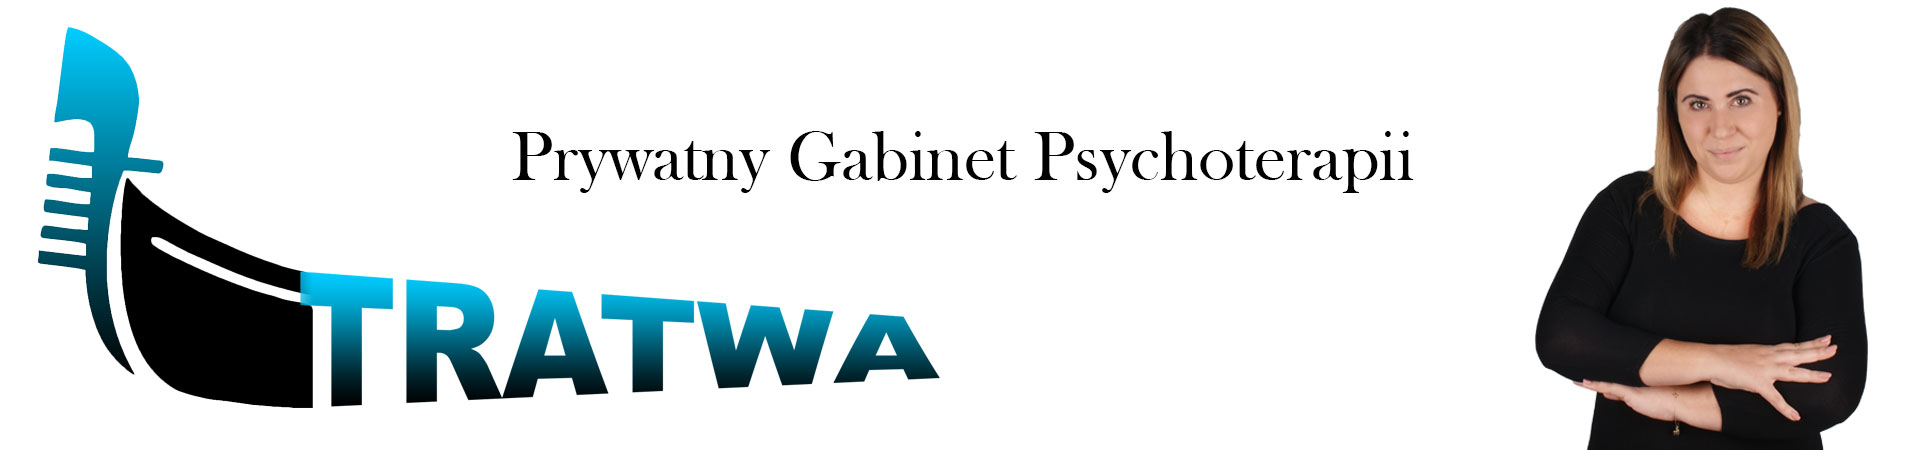 Prywatny Gabinet Psychoterapii